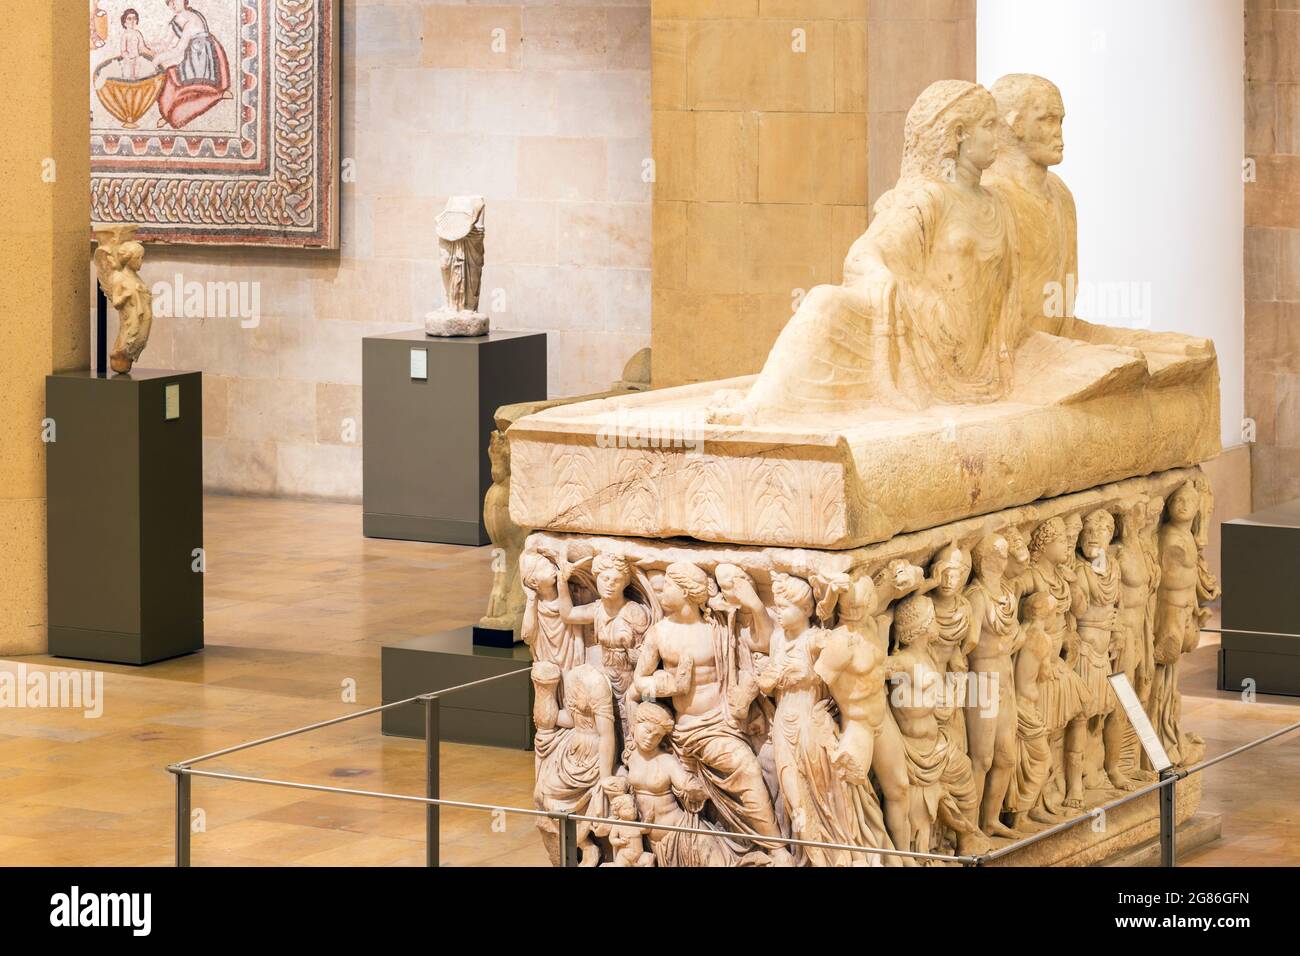 Sarcophage en pierre au Musée national de Beyrouth, Beyrouth, Liban Banque D'Images